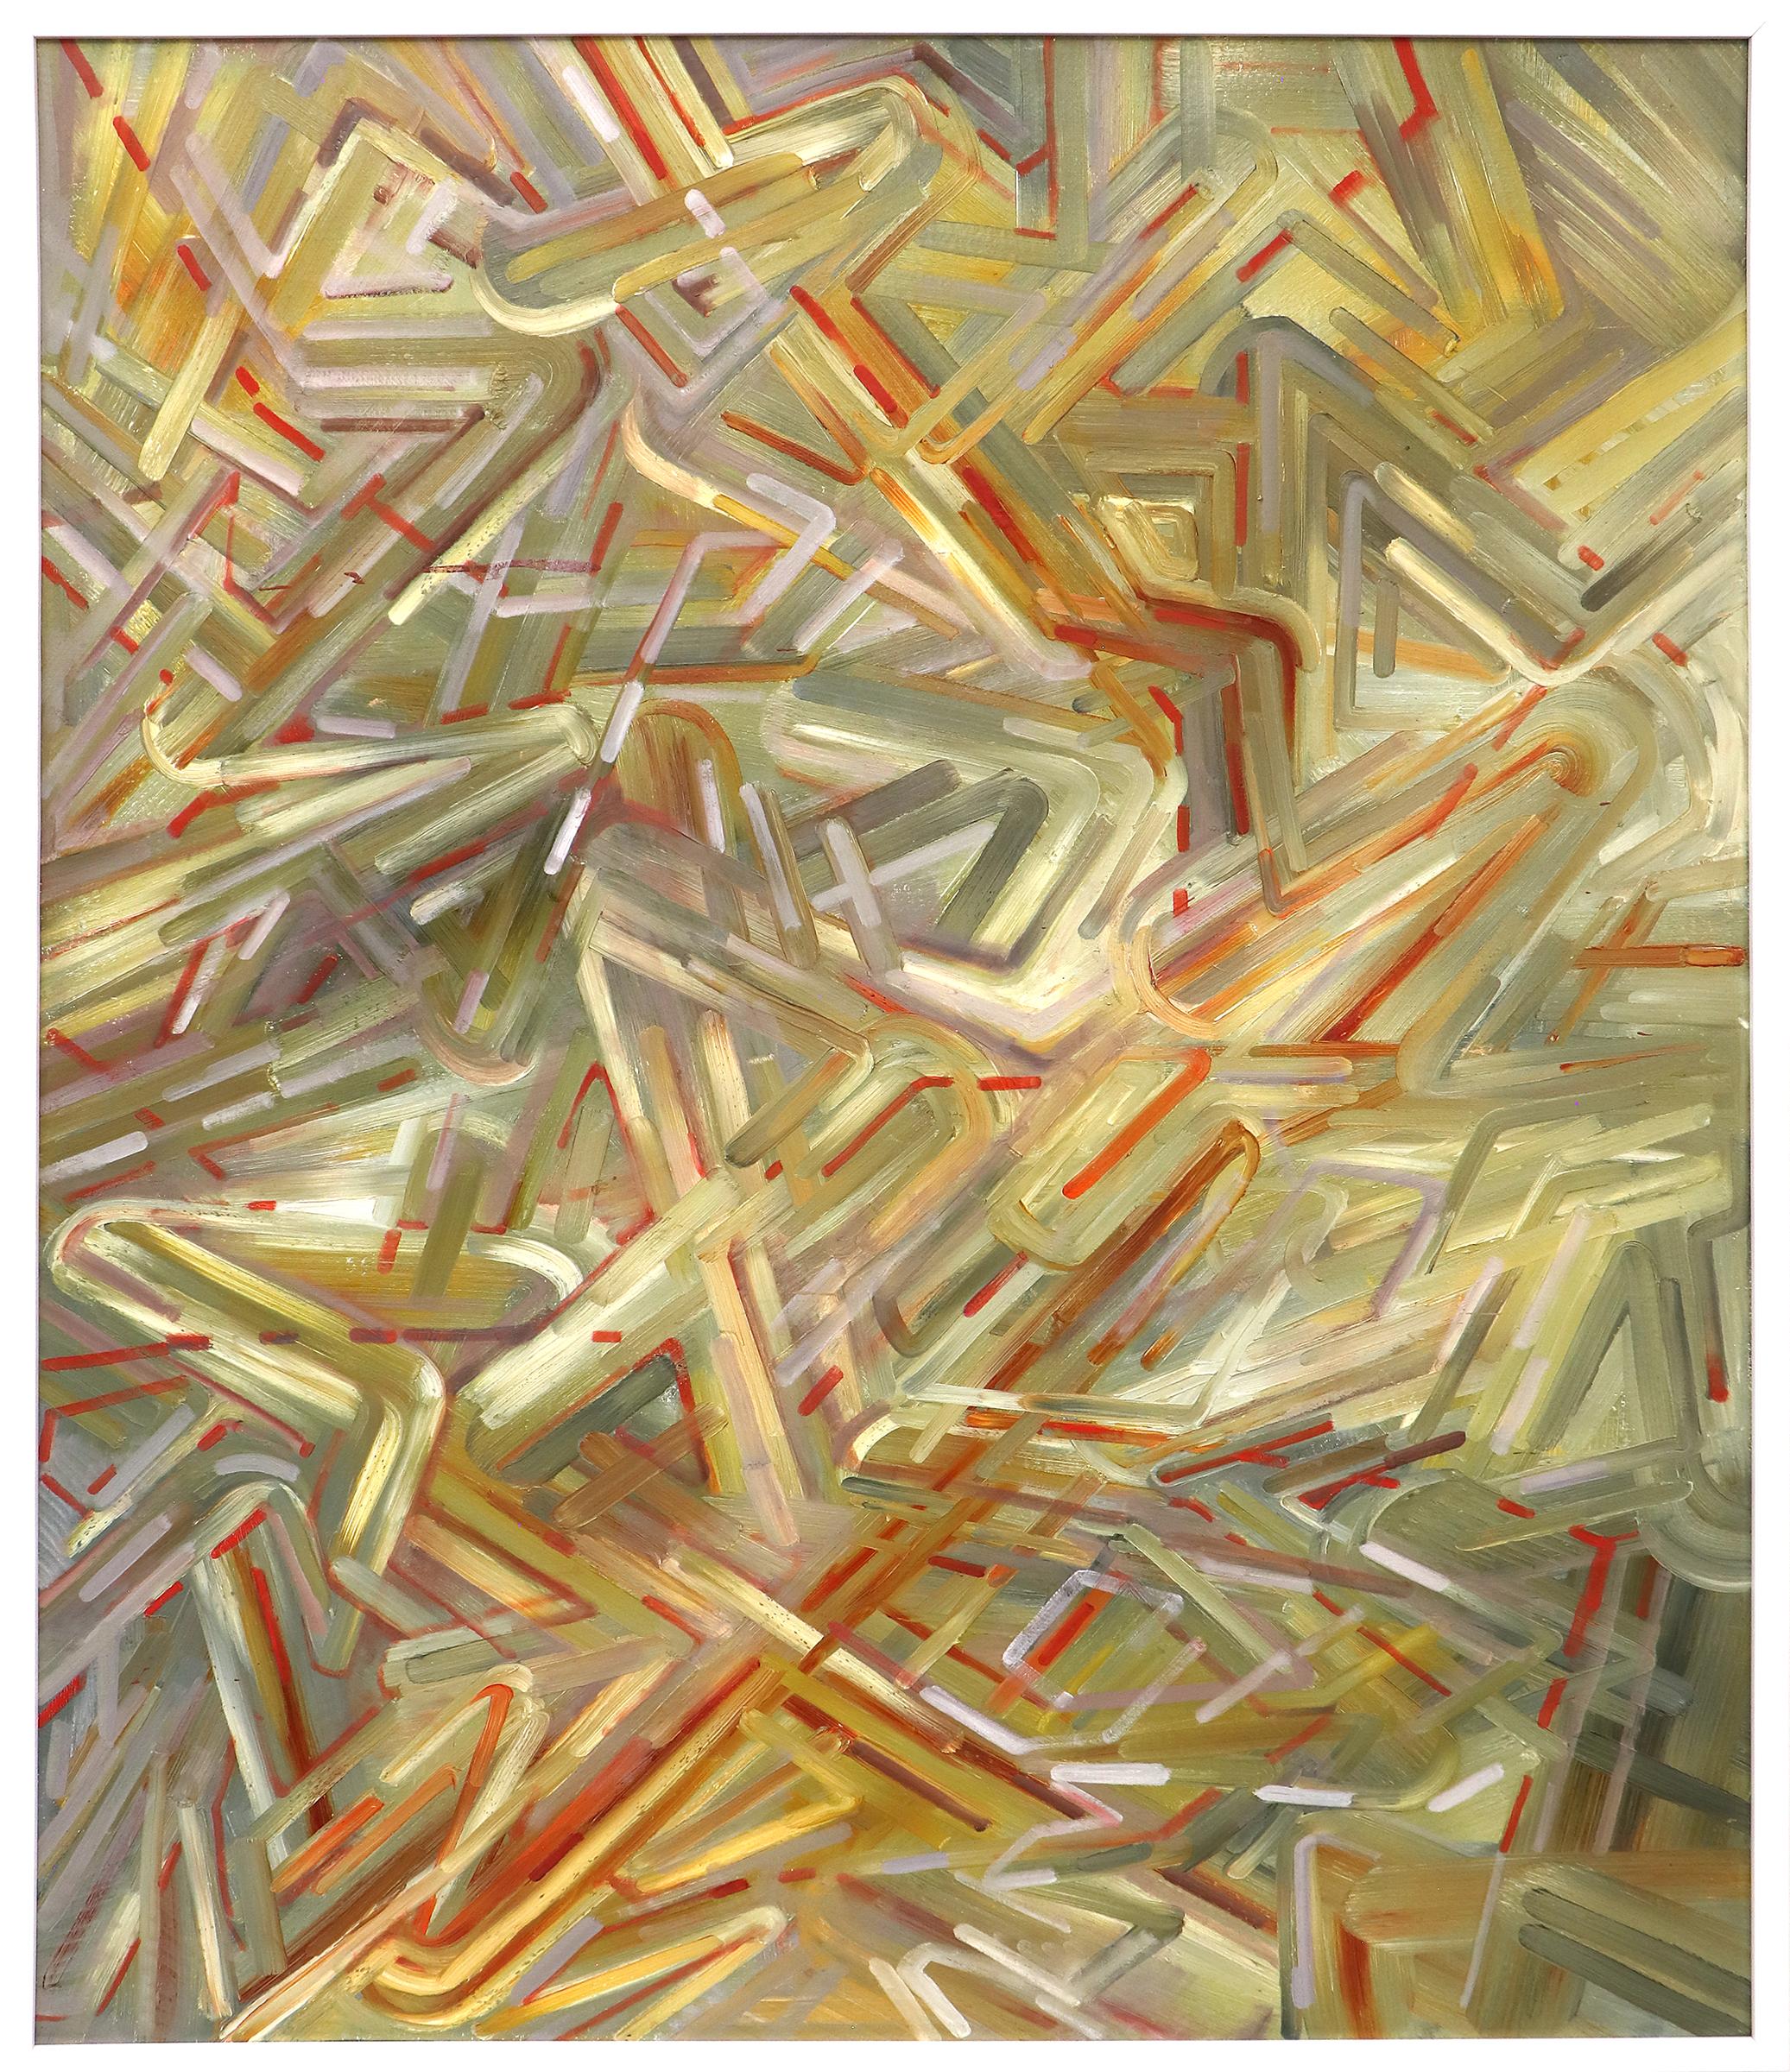 Große abstrakte mehrfarbige Malerei, New Mexico Künstler, Rot, Gelb, Grün, Braun – Painting von Suzanne Vandeboom